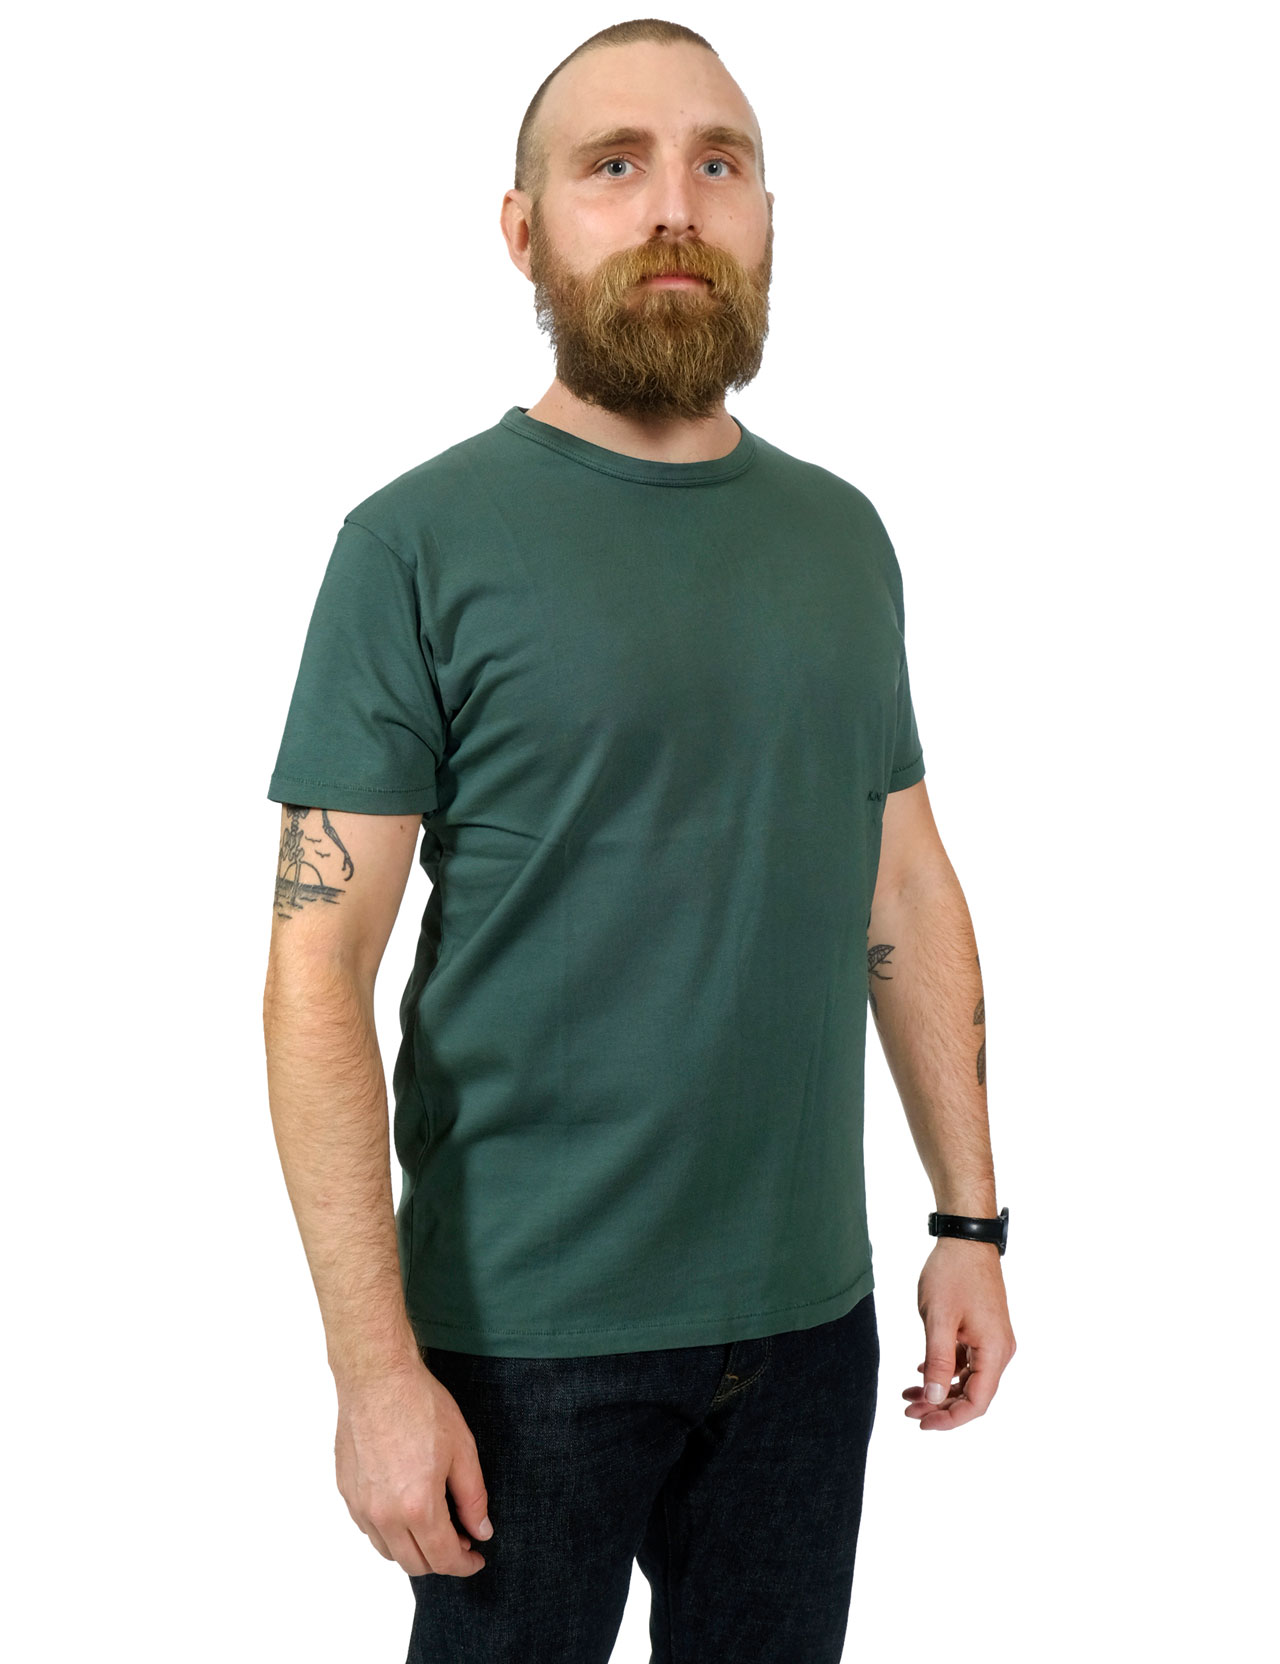 Knickerbocker - The T-Shirt - Knickerbocker Green